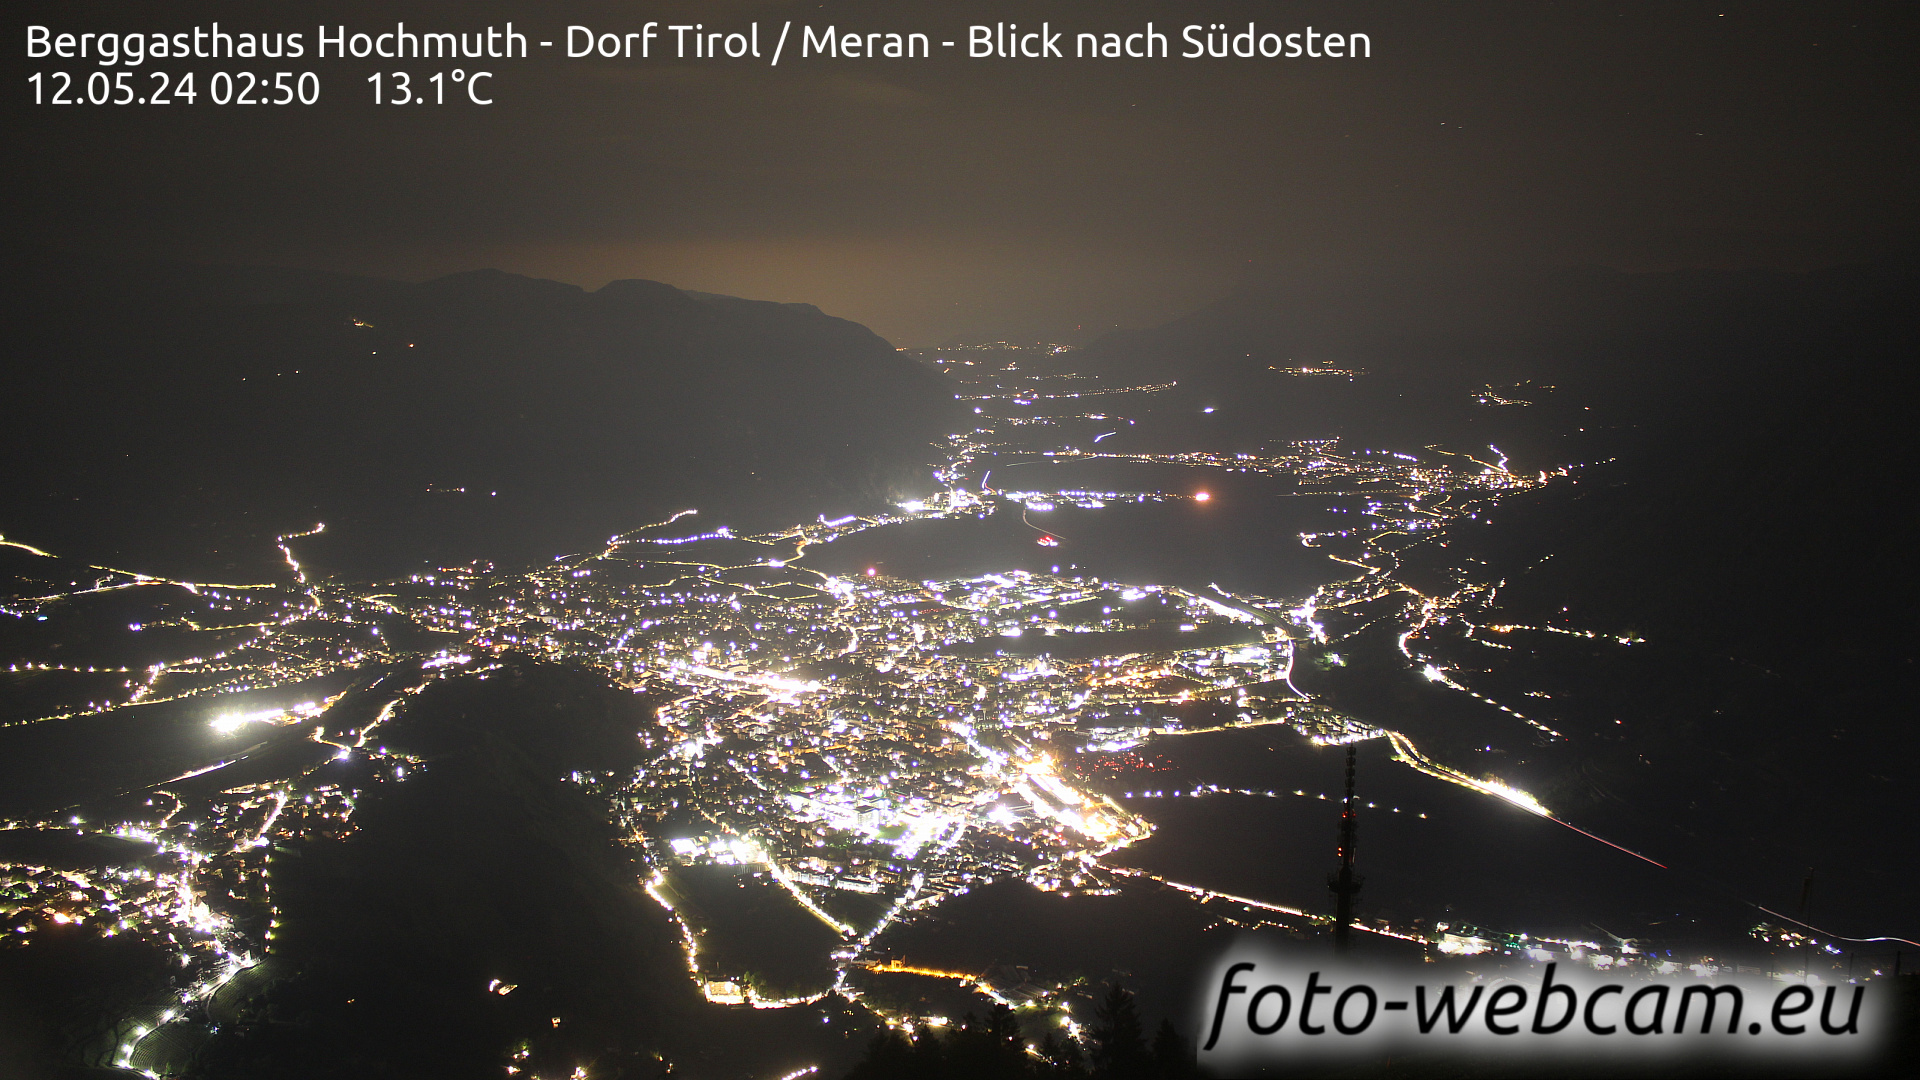 Tirol Wed. 02:56